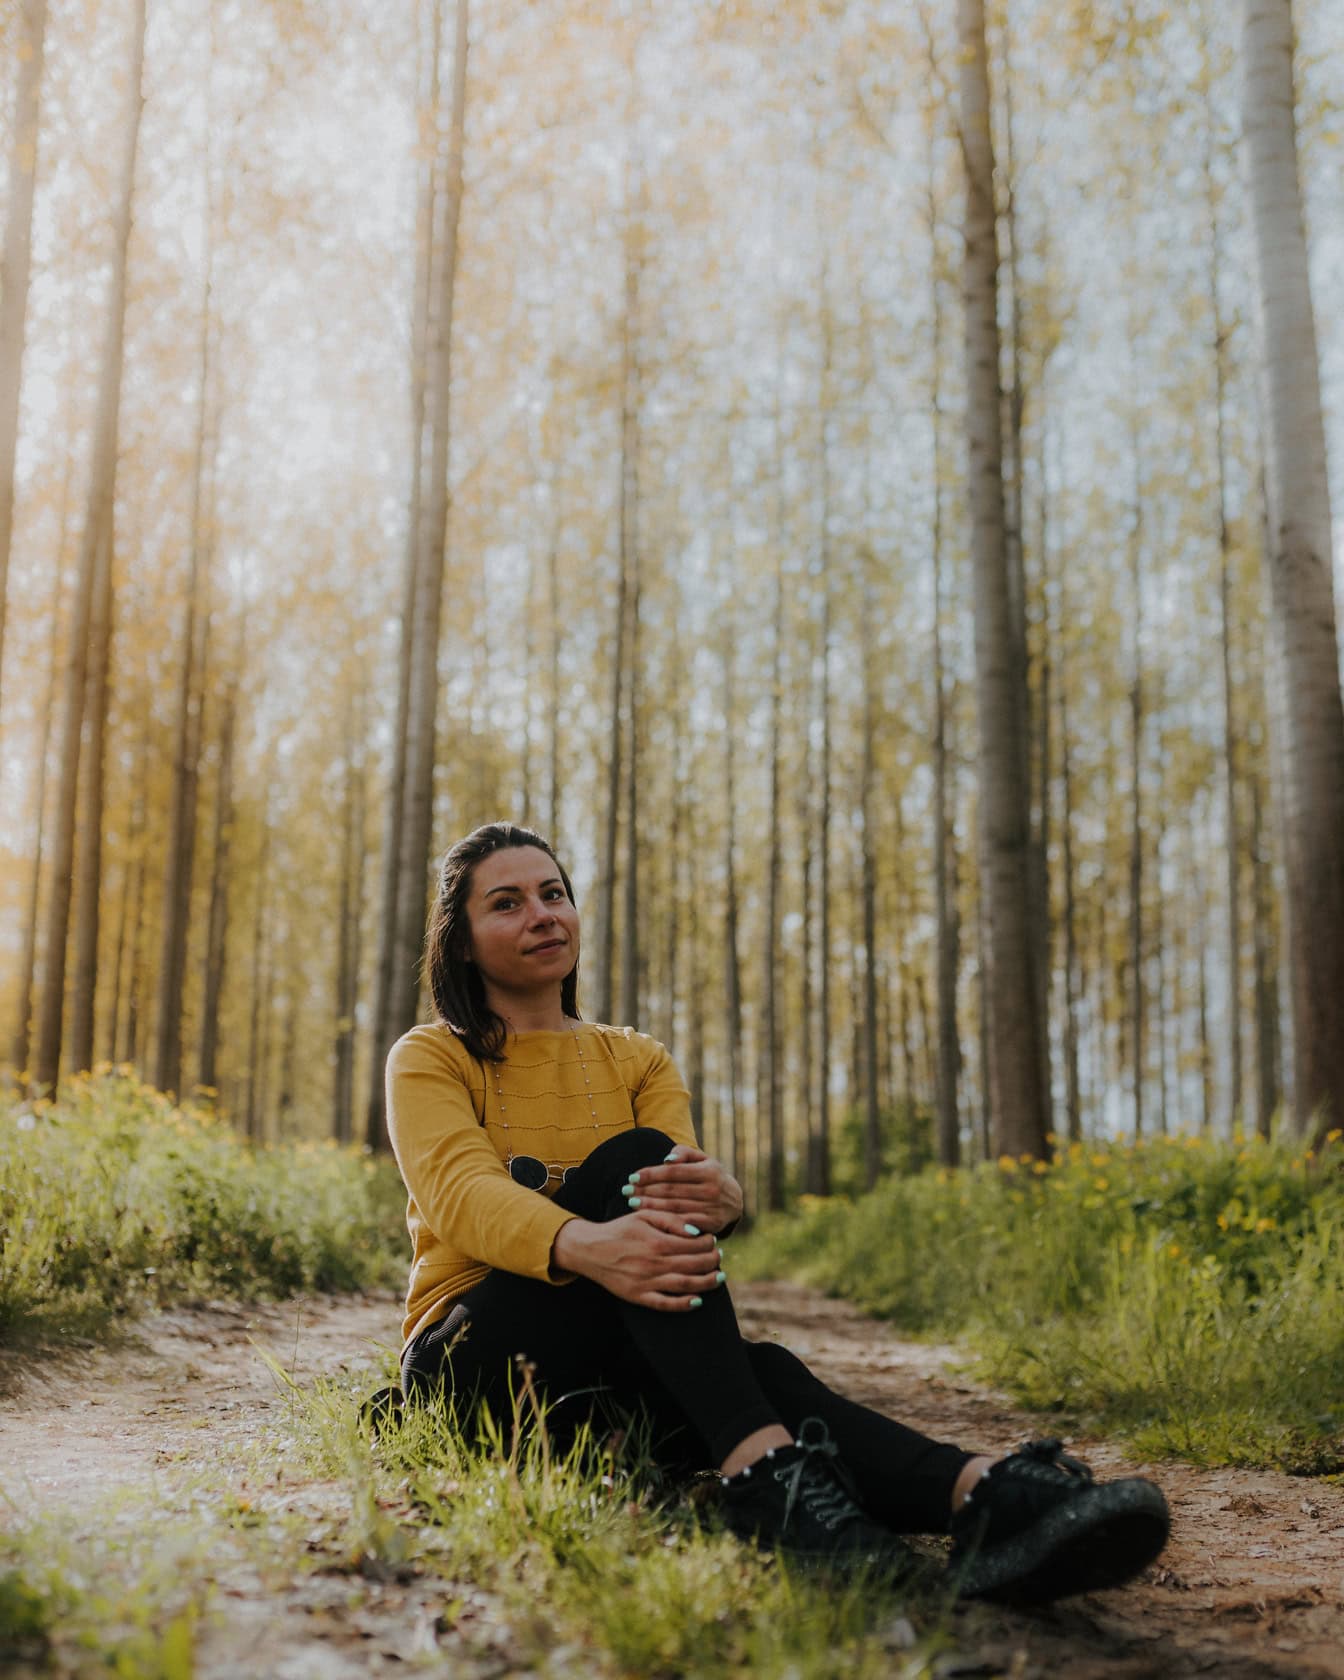 Potret seorang wanita muda yang riang duduk di jalan tanah di hutan